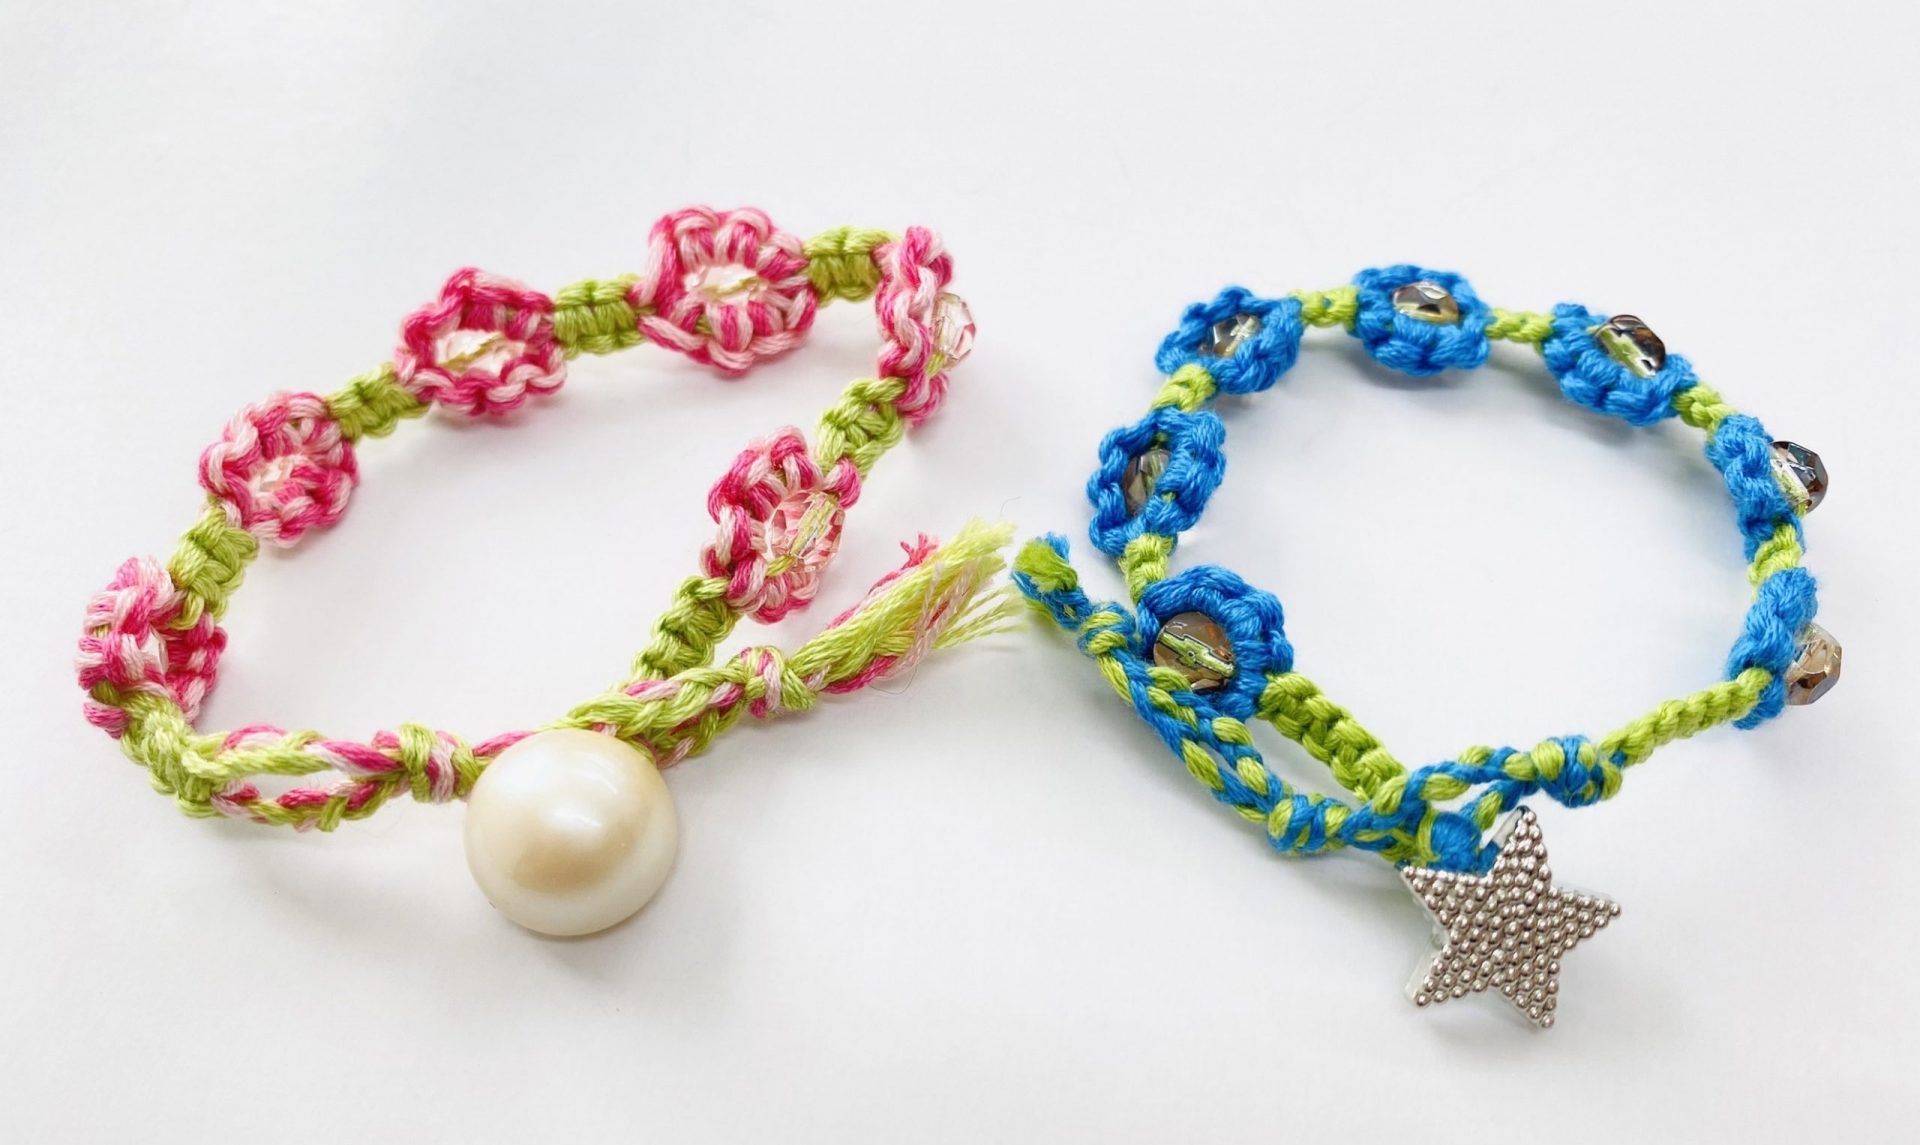 
刺繍糸で花冠のように編んだ一品。Kids用もあるので、ぜひ親子でペアルックにいかがでしょうか。
